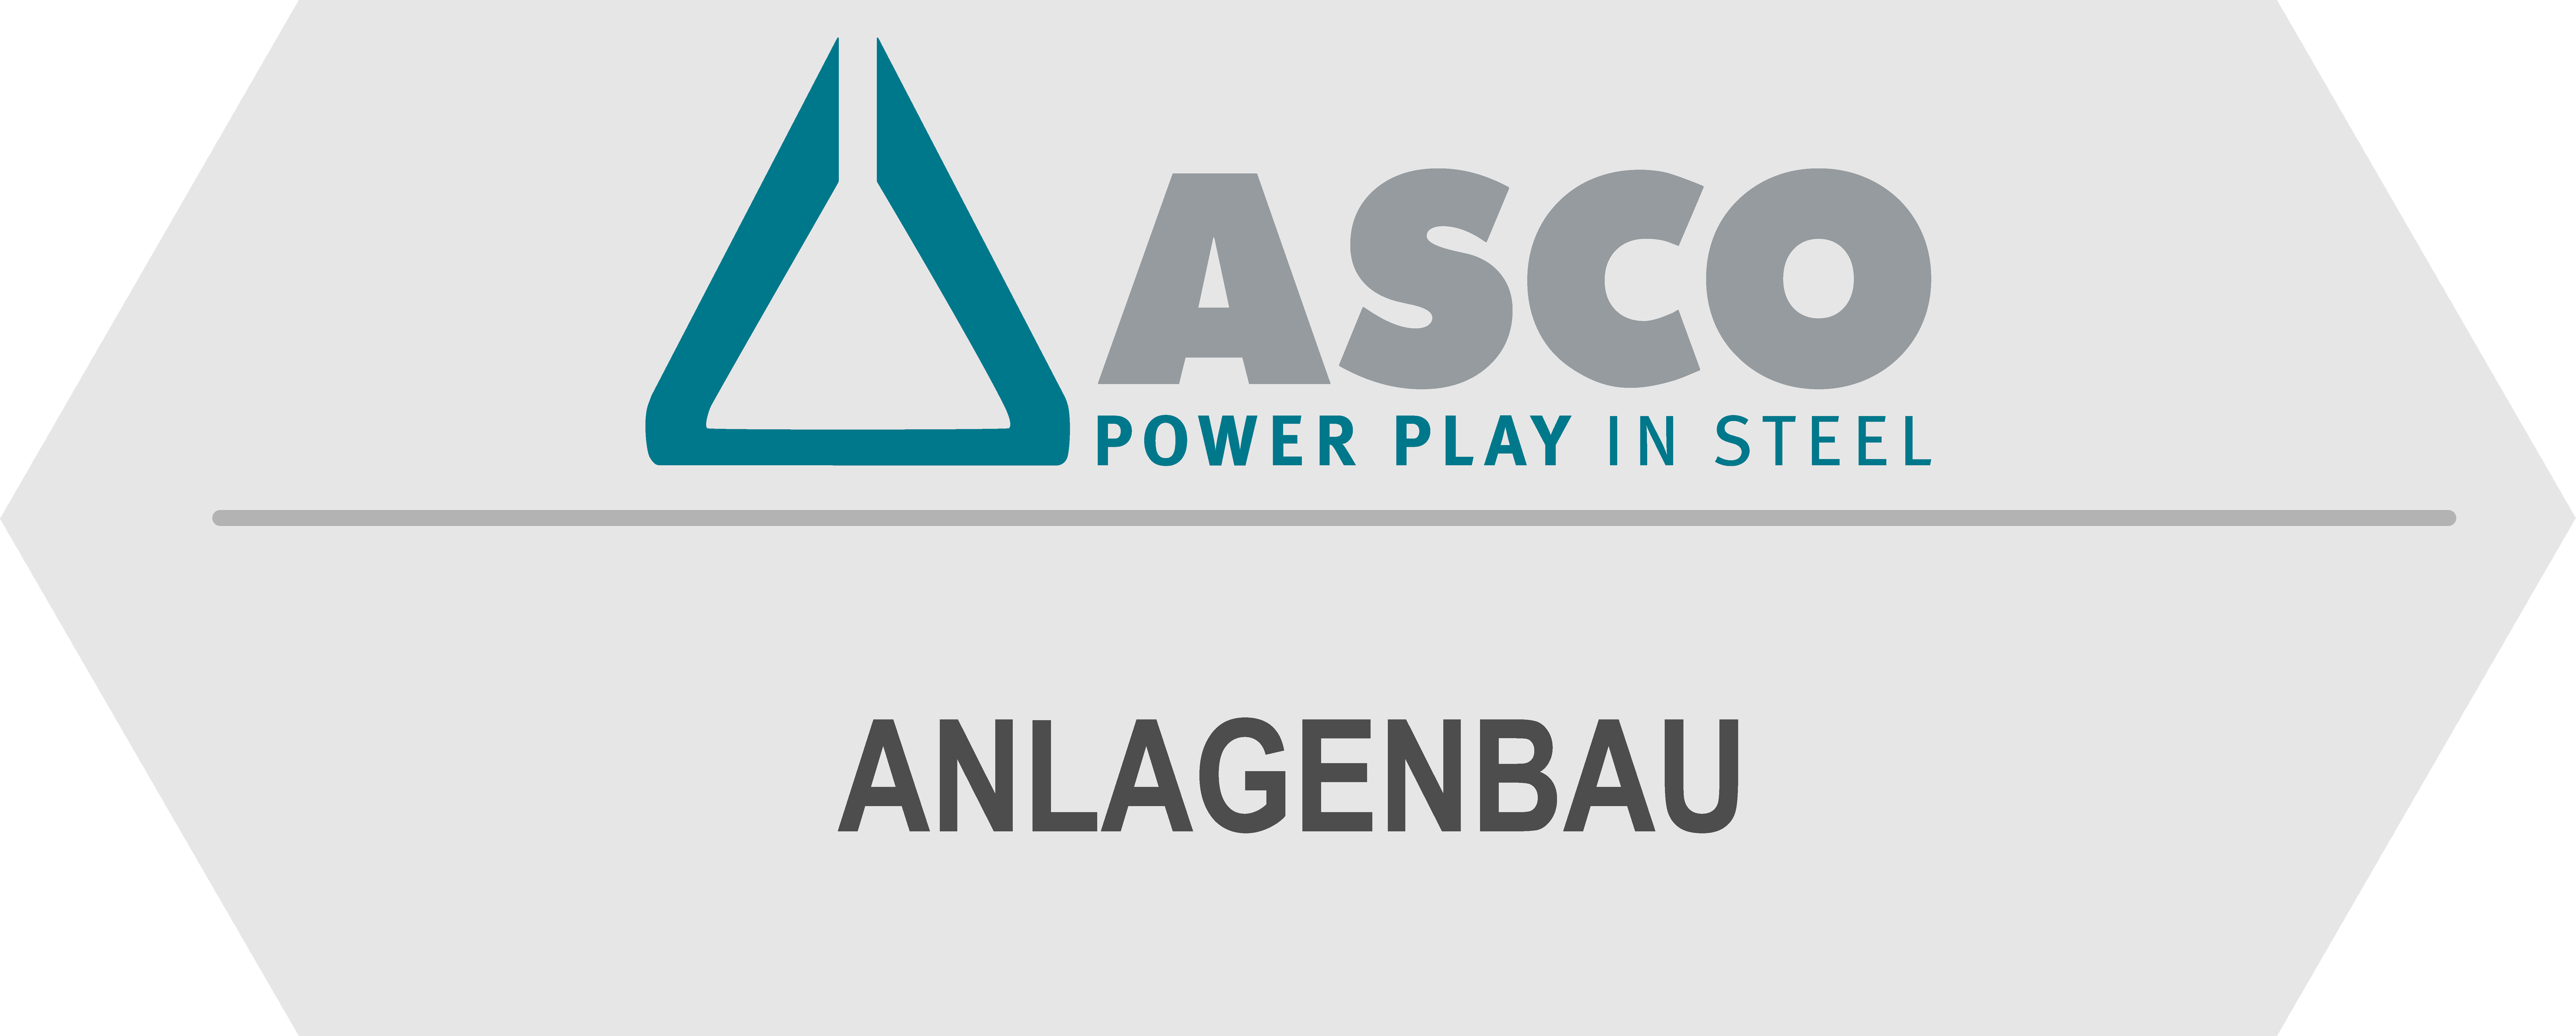 ASCO Anlagenbau Consulting GmbH